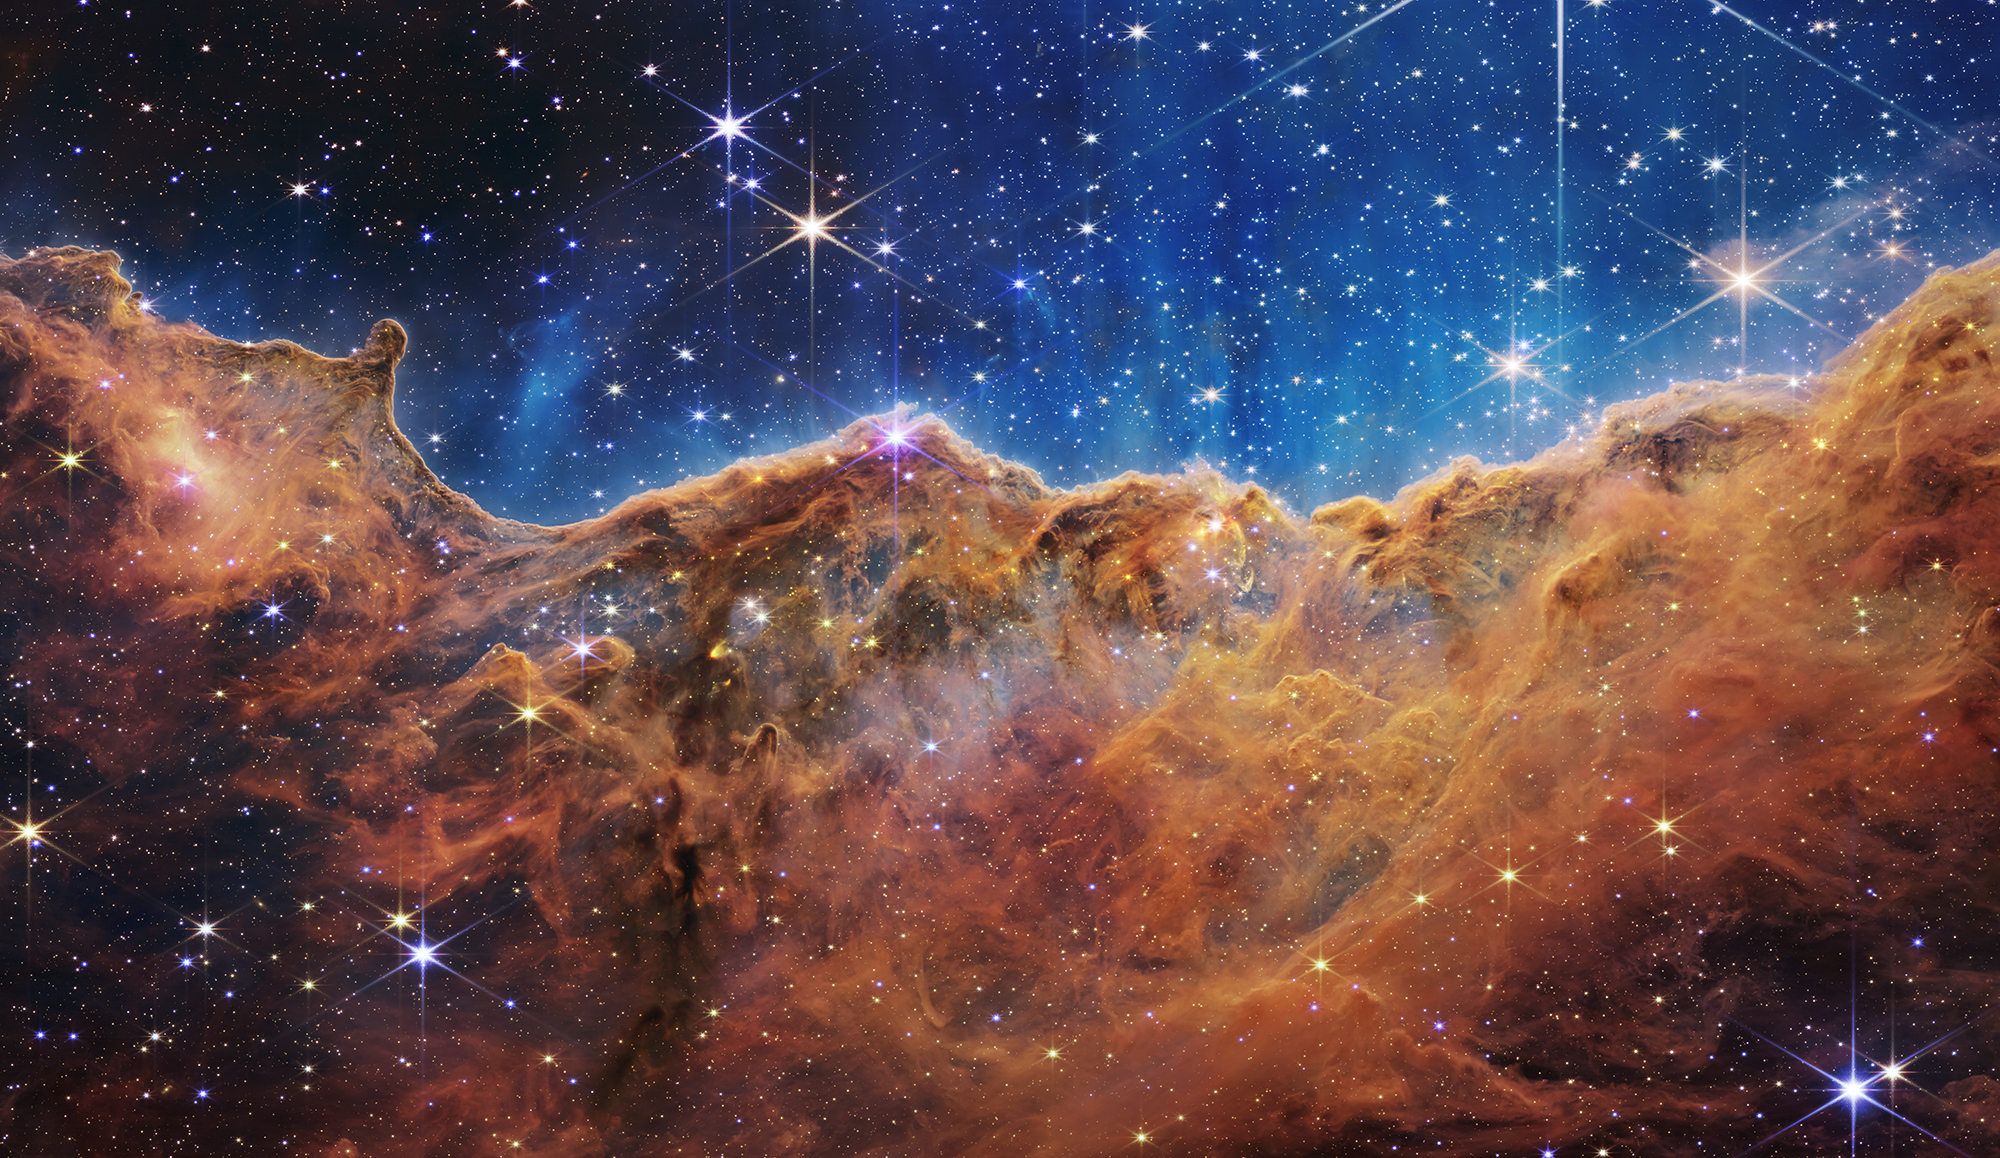 Kính thiên văn James Webb: Kính thiên văn James Webb được coi là một trong những công trình khoa học tầm cỡ của thế kỷ 21, mang lại những tín hiệu hi vọng trong việc khám phá các hành tinh bên ngoài Hệ Mặt Trời. Hãy cùng tìm hiểu về kính thiên văn này qua hình ảnh đầy ấn tượng.